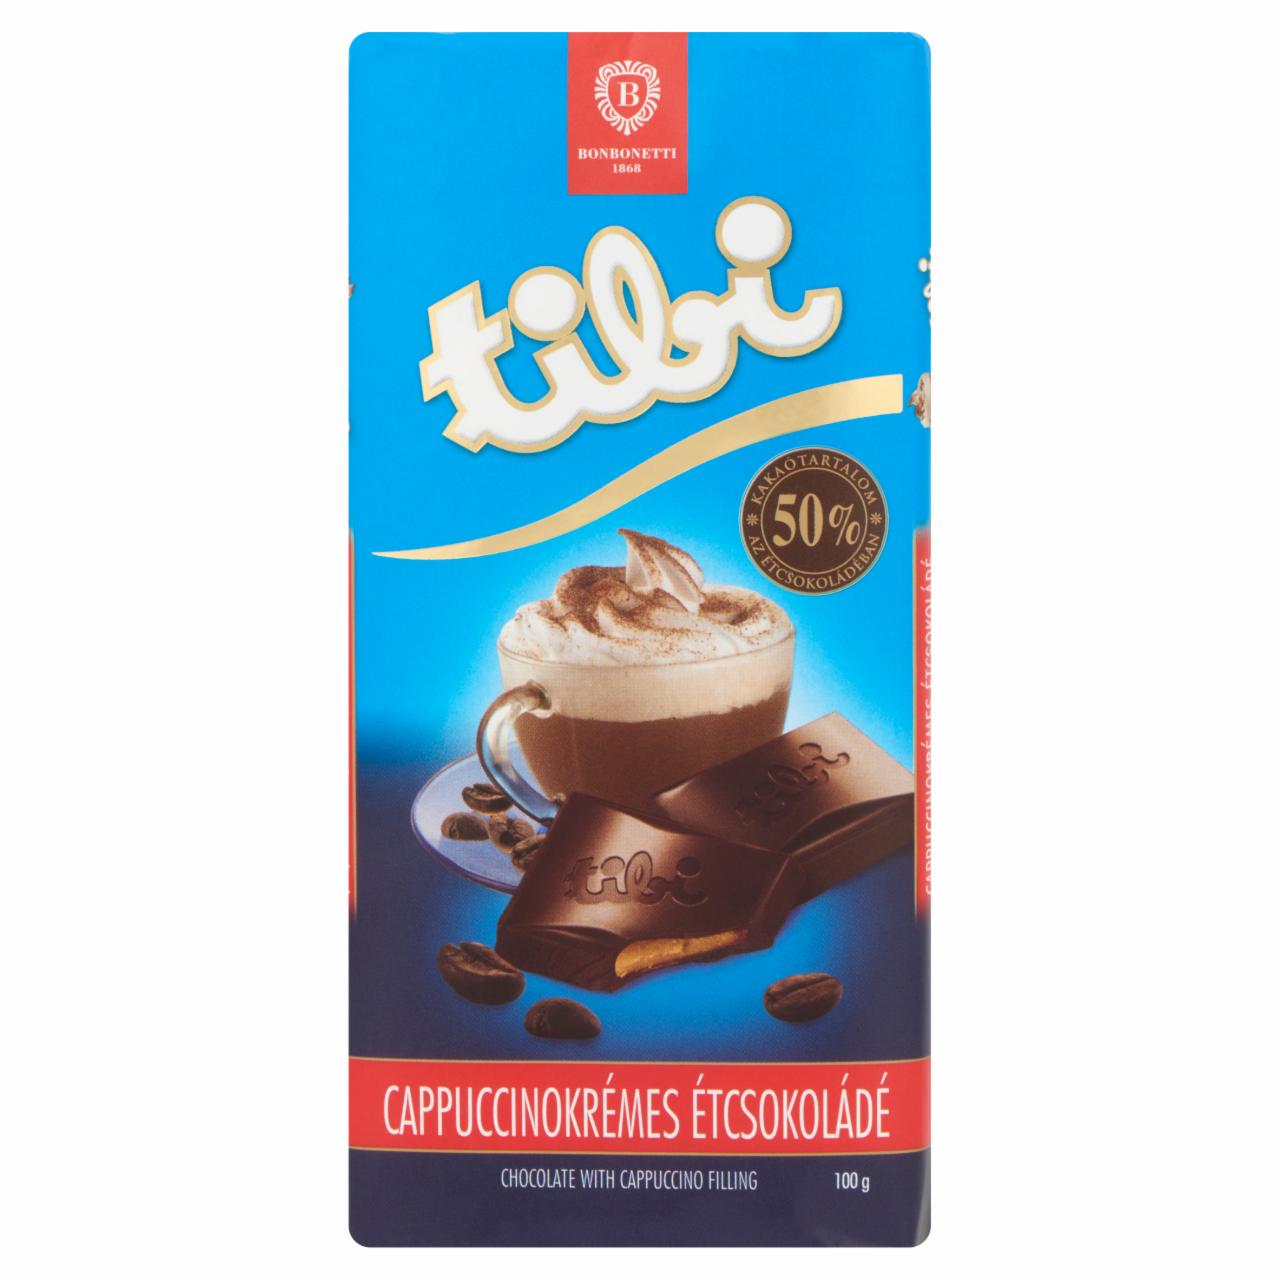 Képek - Tibi cappuccino krémmel töltött étcsokoládé 100 g